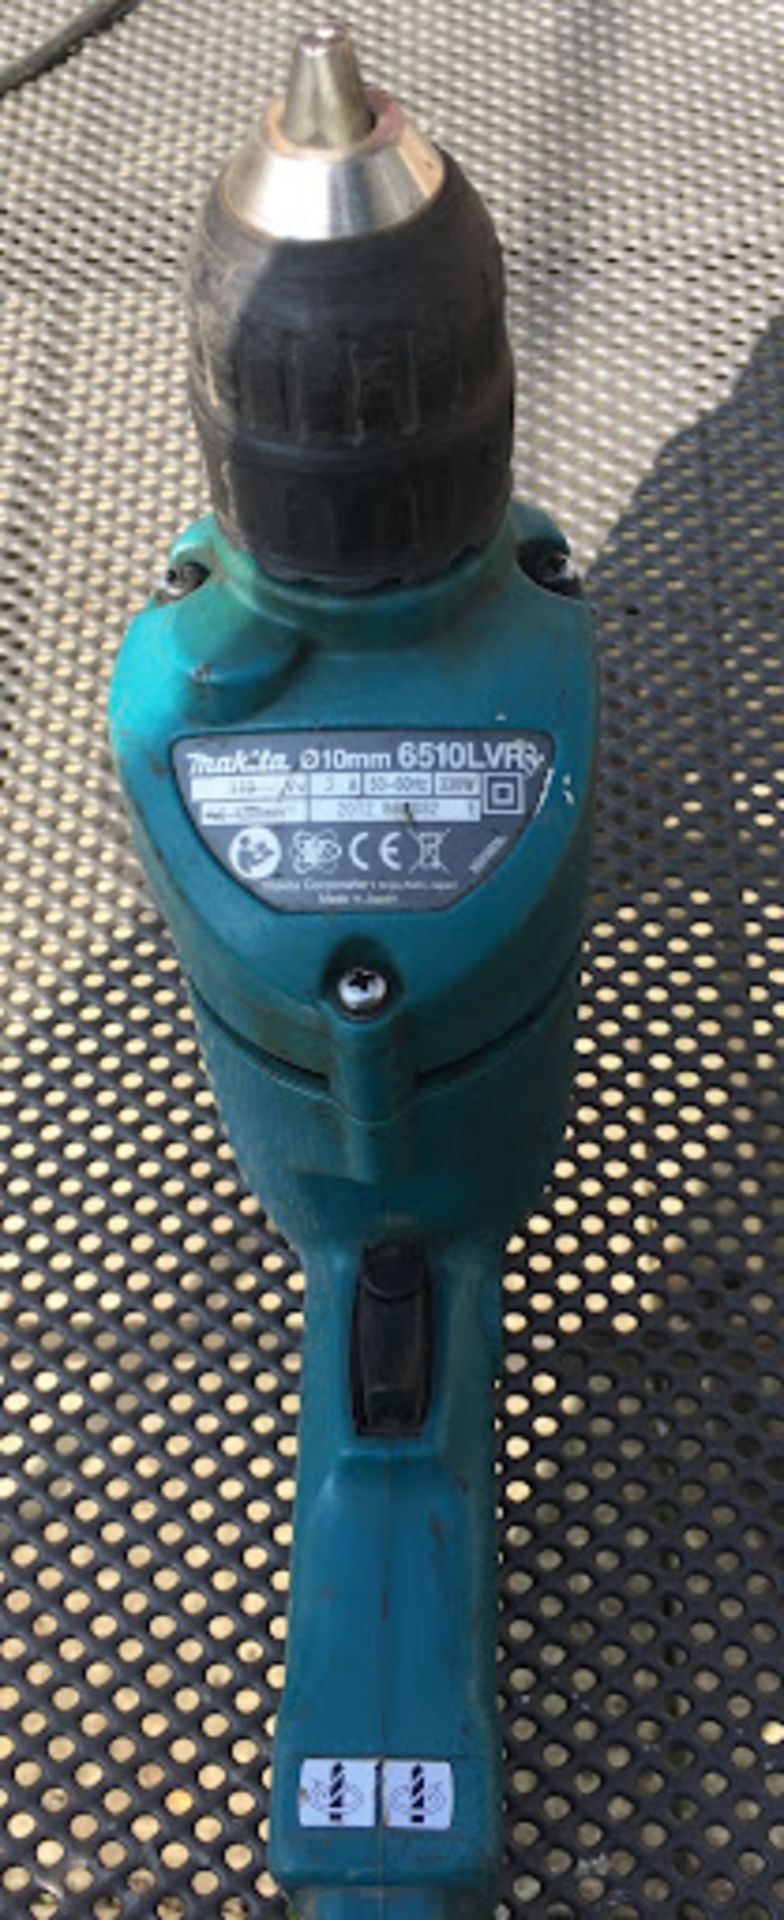 Makita 6510LVR 110V 10mm Rotary Drill *NO VAT* - Image 3 of 3